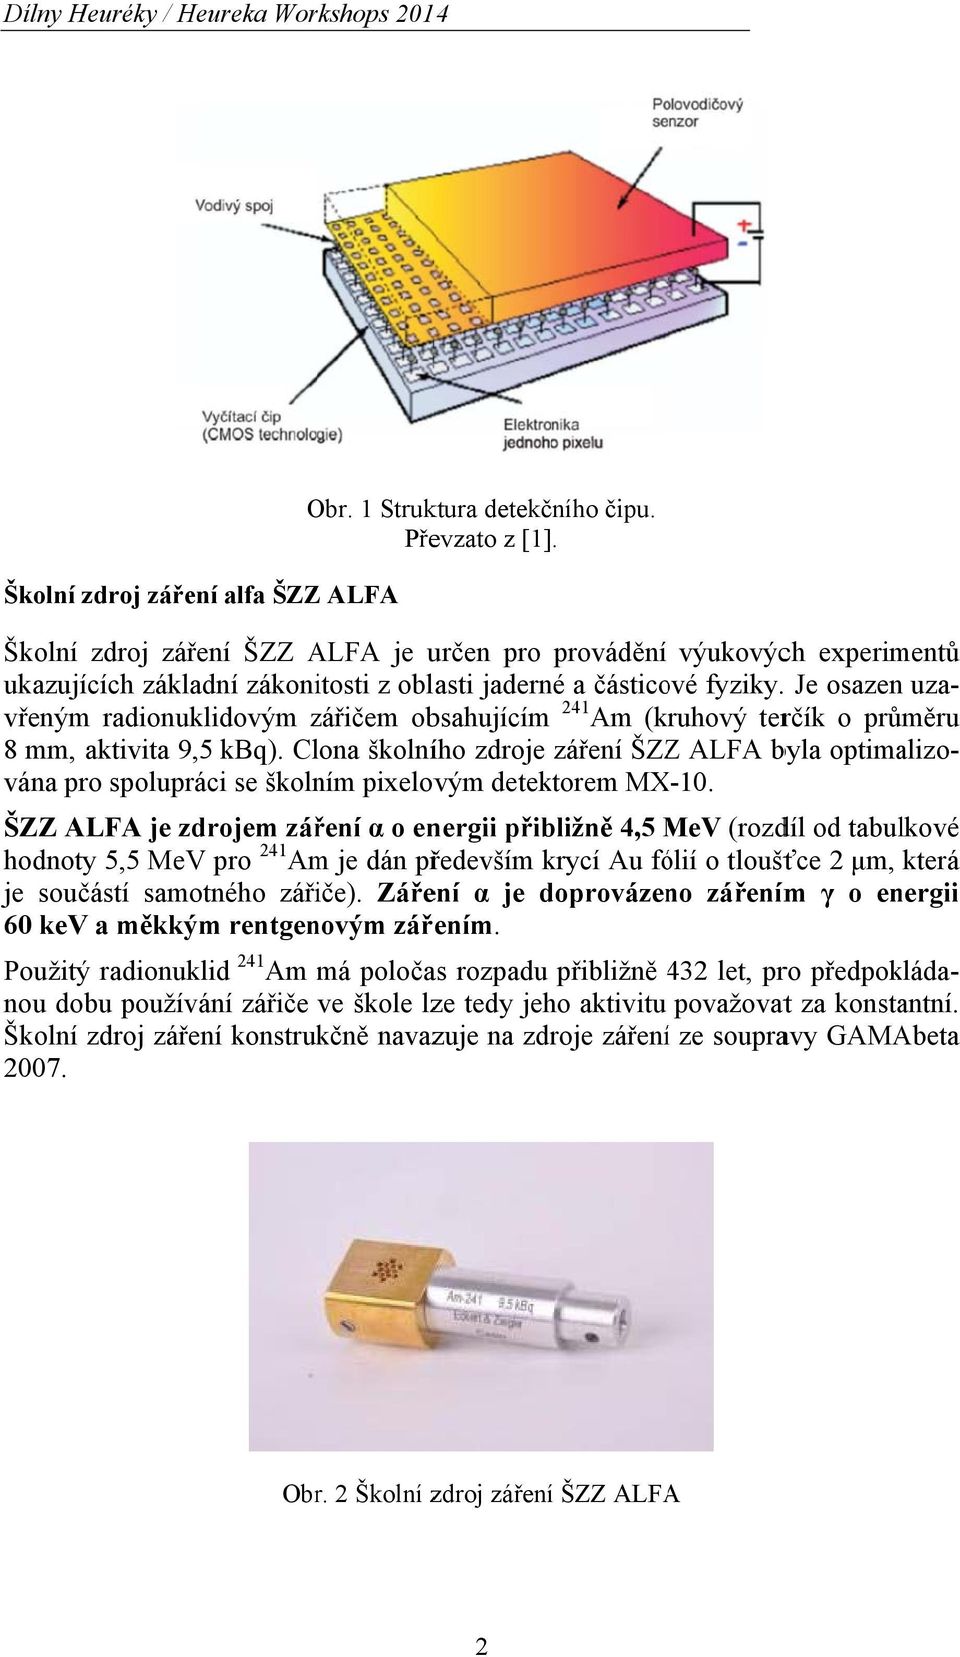 Clona školního zdroje záření ŠZZZ ALFA byla optimalizo- vána pro spolupráci se školním pixelovým detektorem MX-10.